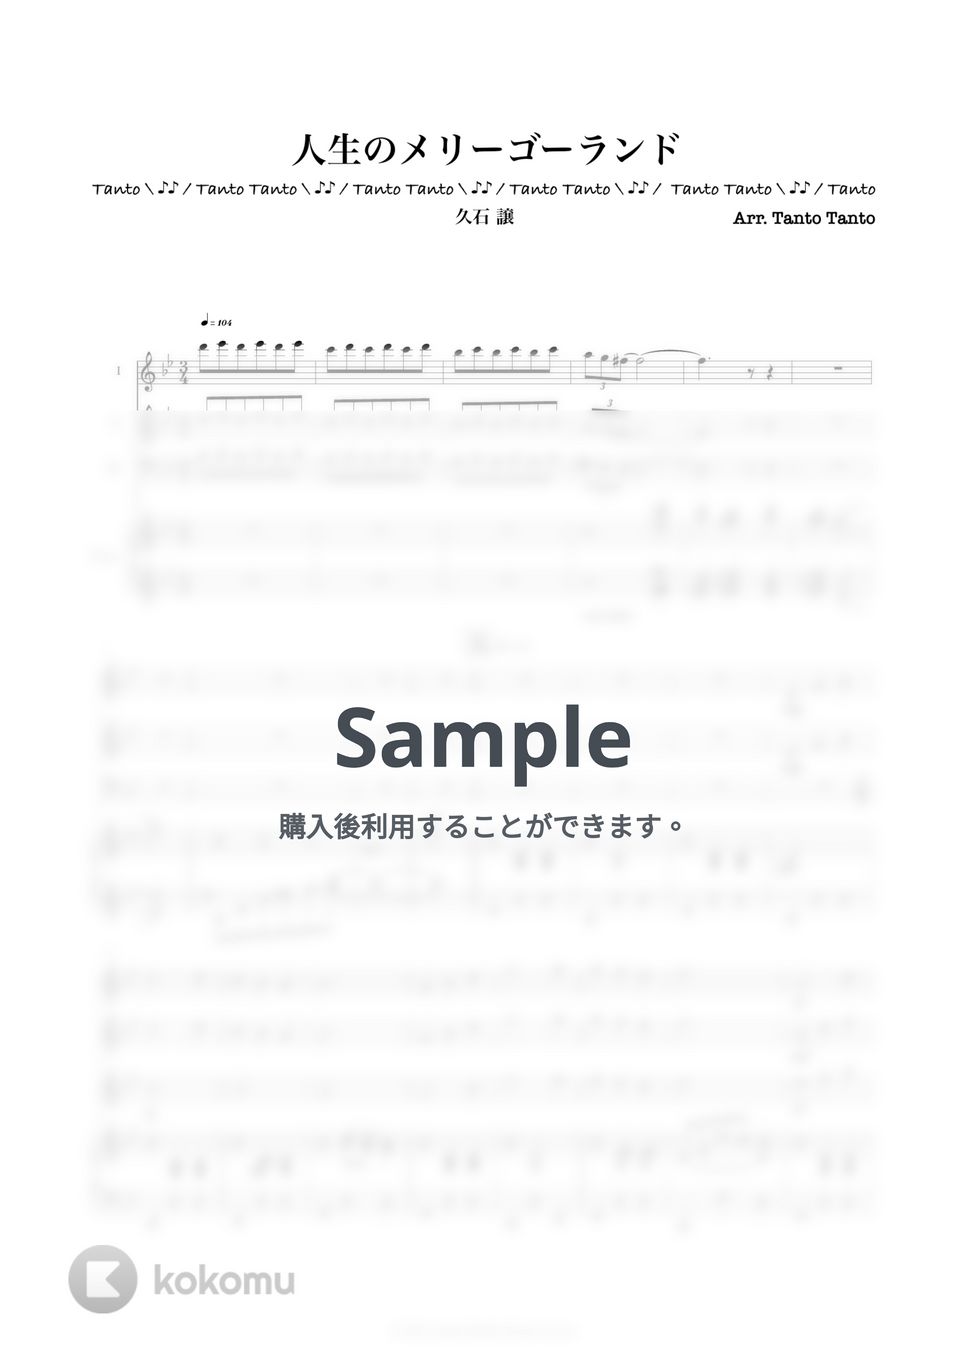 久石譲 - 人生のメリーゴーランド (ハウルの動く城 Kenhamo3 & Piano 上級) by Tanto Tanto